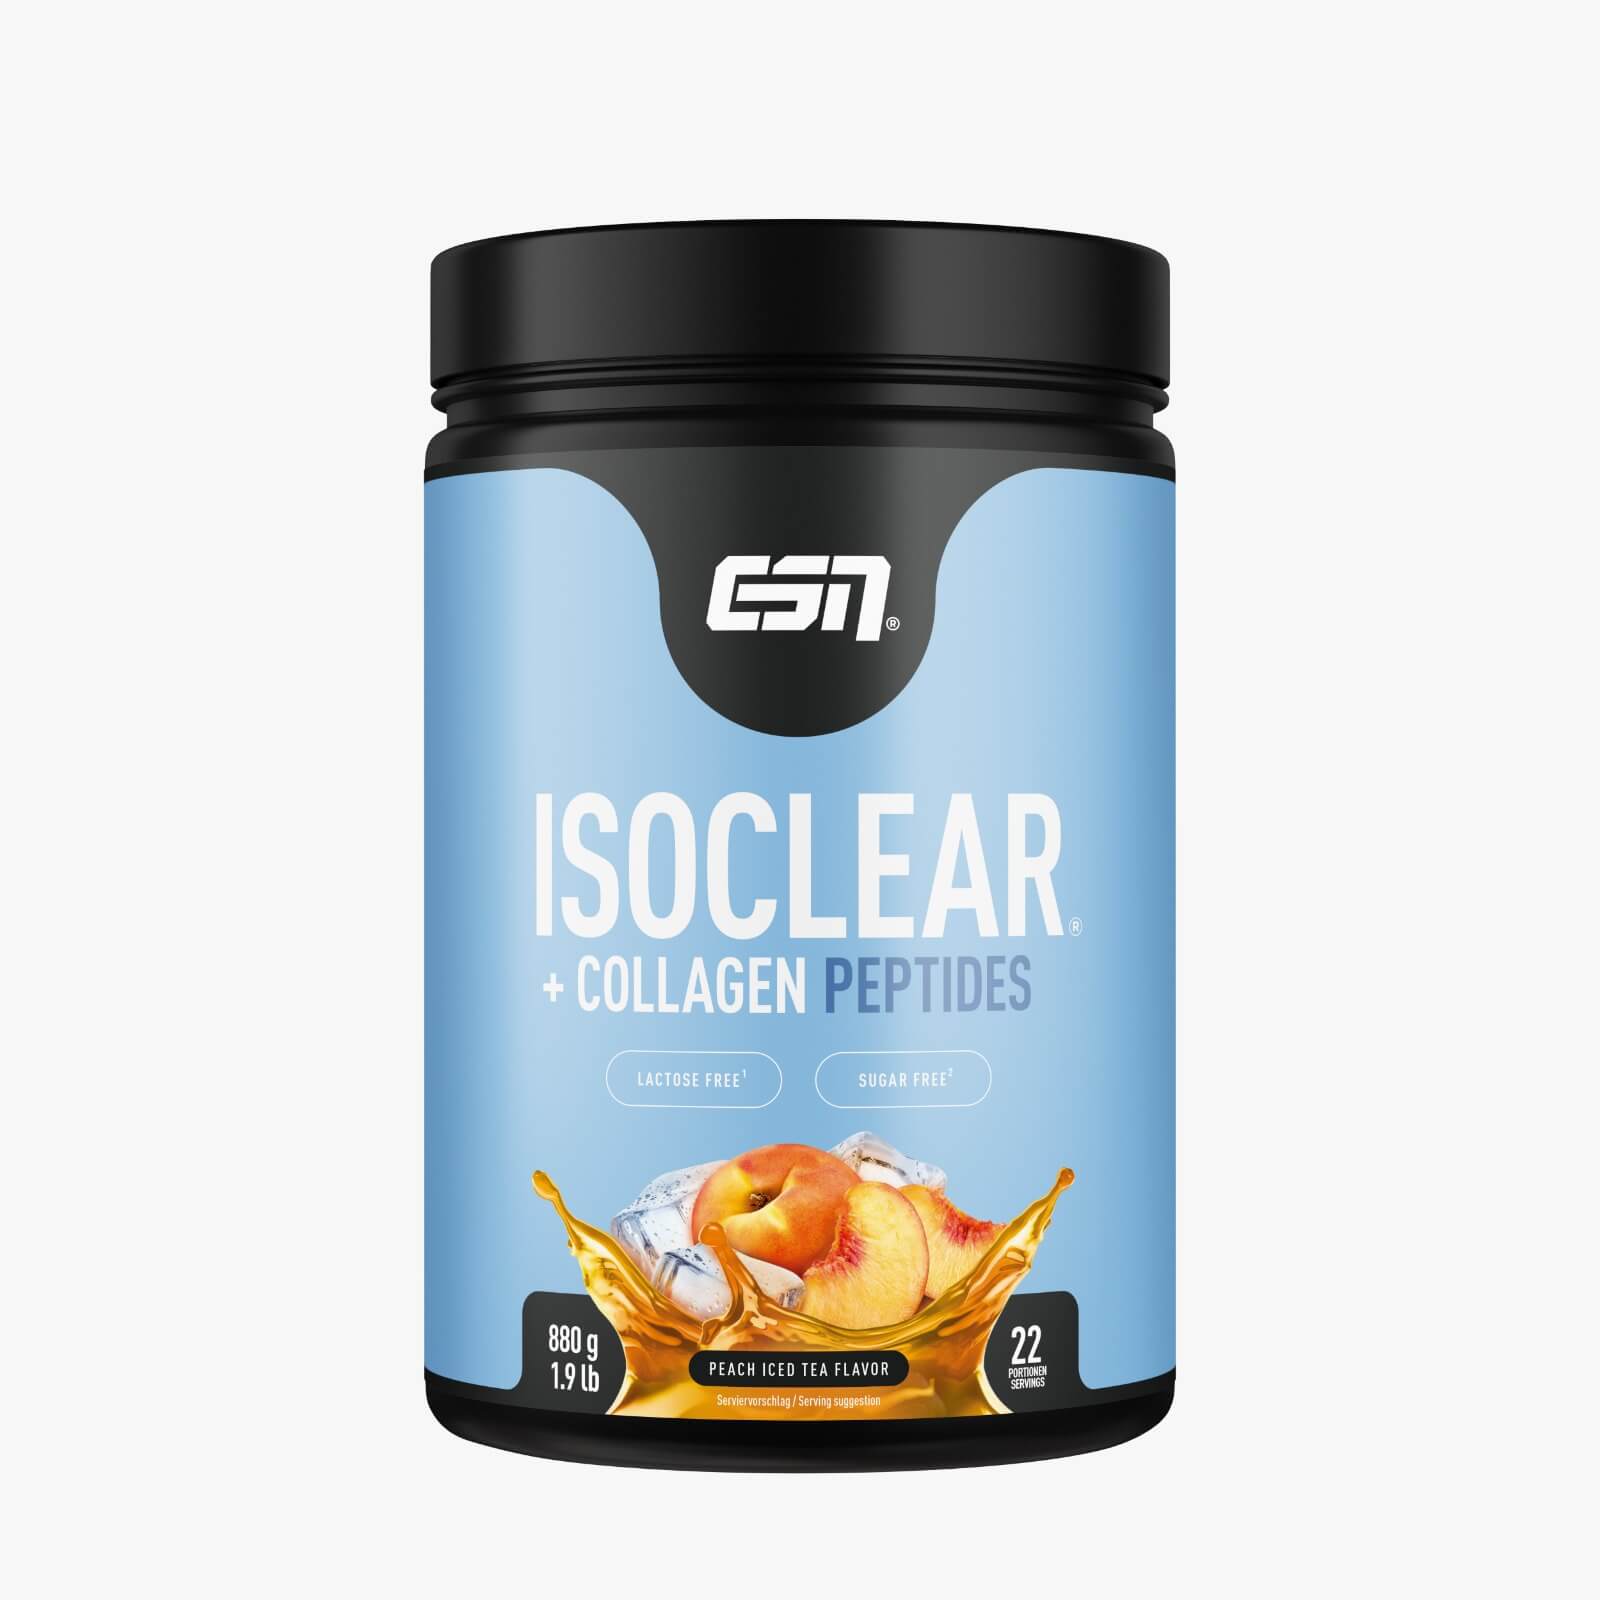 ESN 20% Proteinaktion mit Release des ISOCLEAR + Collagen Peptides | Suppligator.de